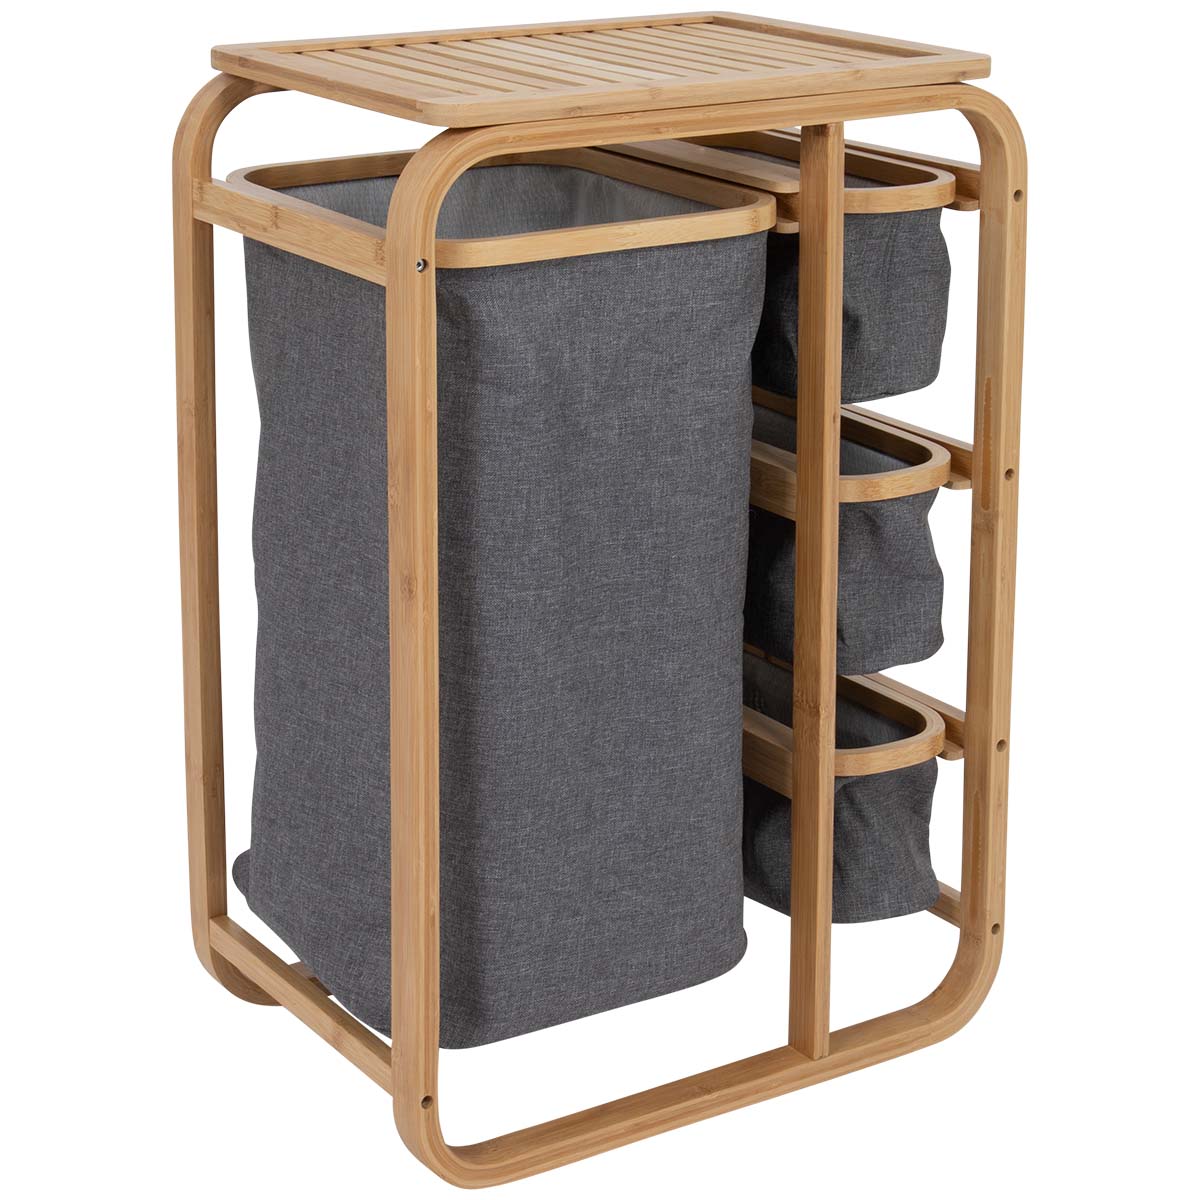 1609327 Een stijlvolle kast uit de Urban outdoor collectie. De kast is voorzien van een stevig bamboe frame met stabiel bovenblad. De kast is inclusief 4 uitschuifbare manden. Ideaal voor op de camping of voor thuis gebruik.